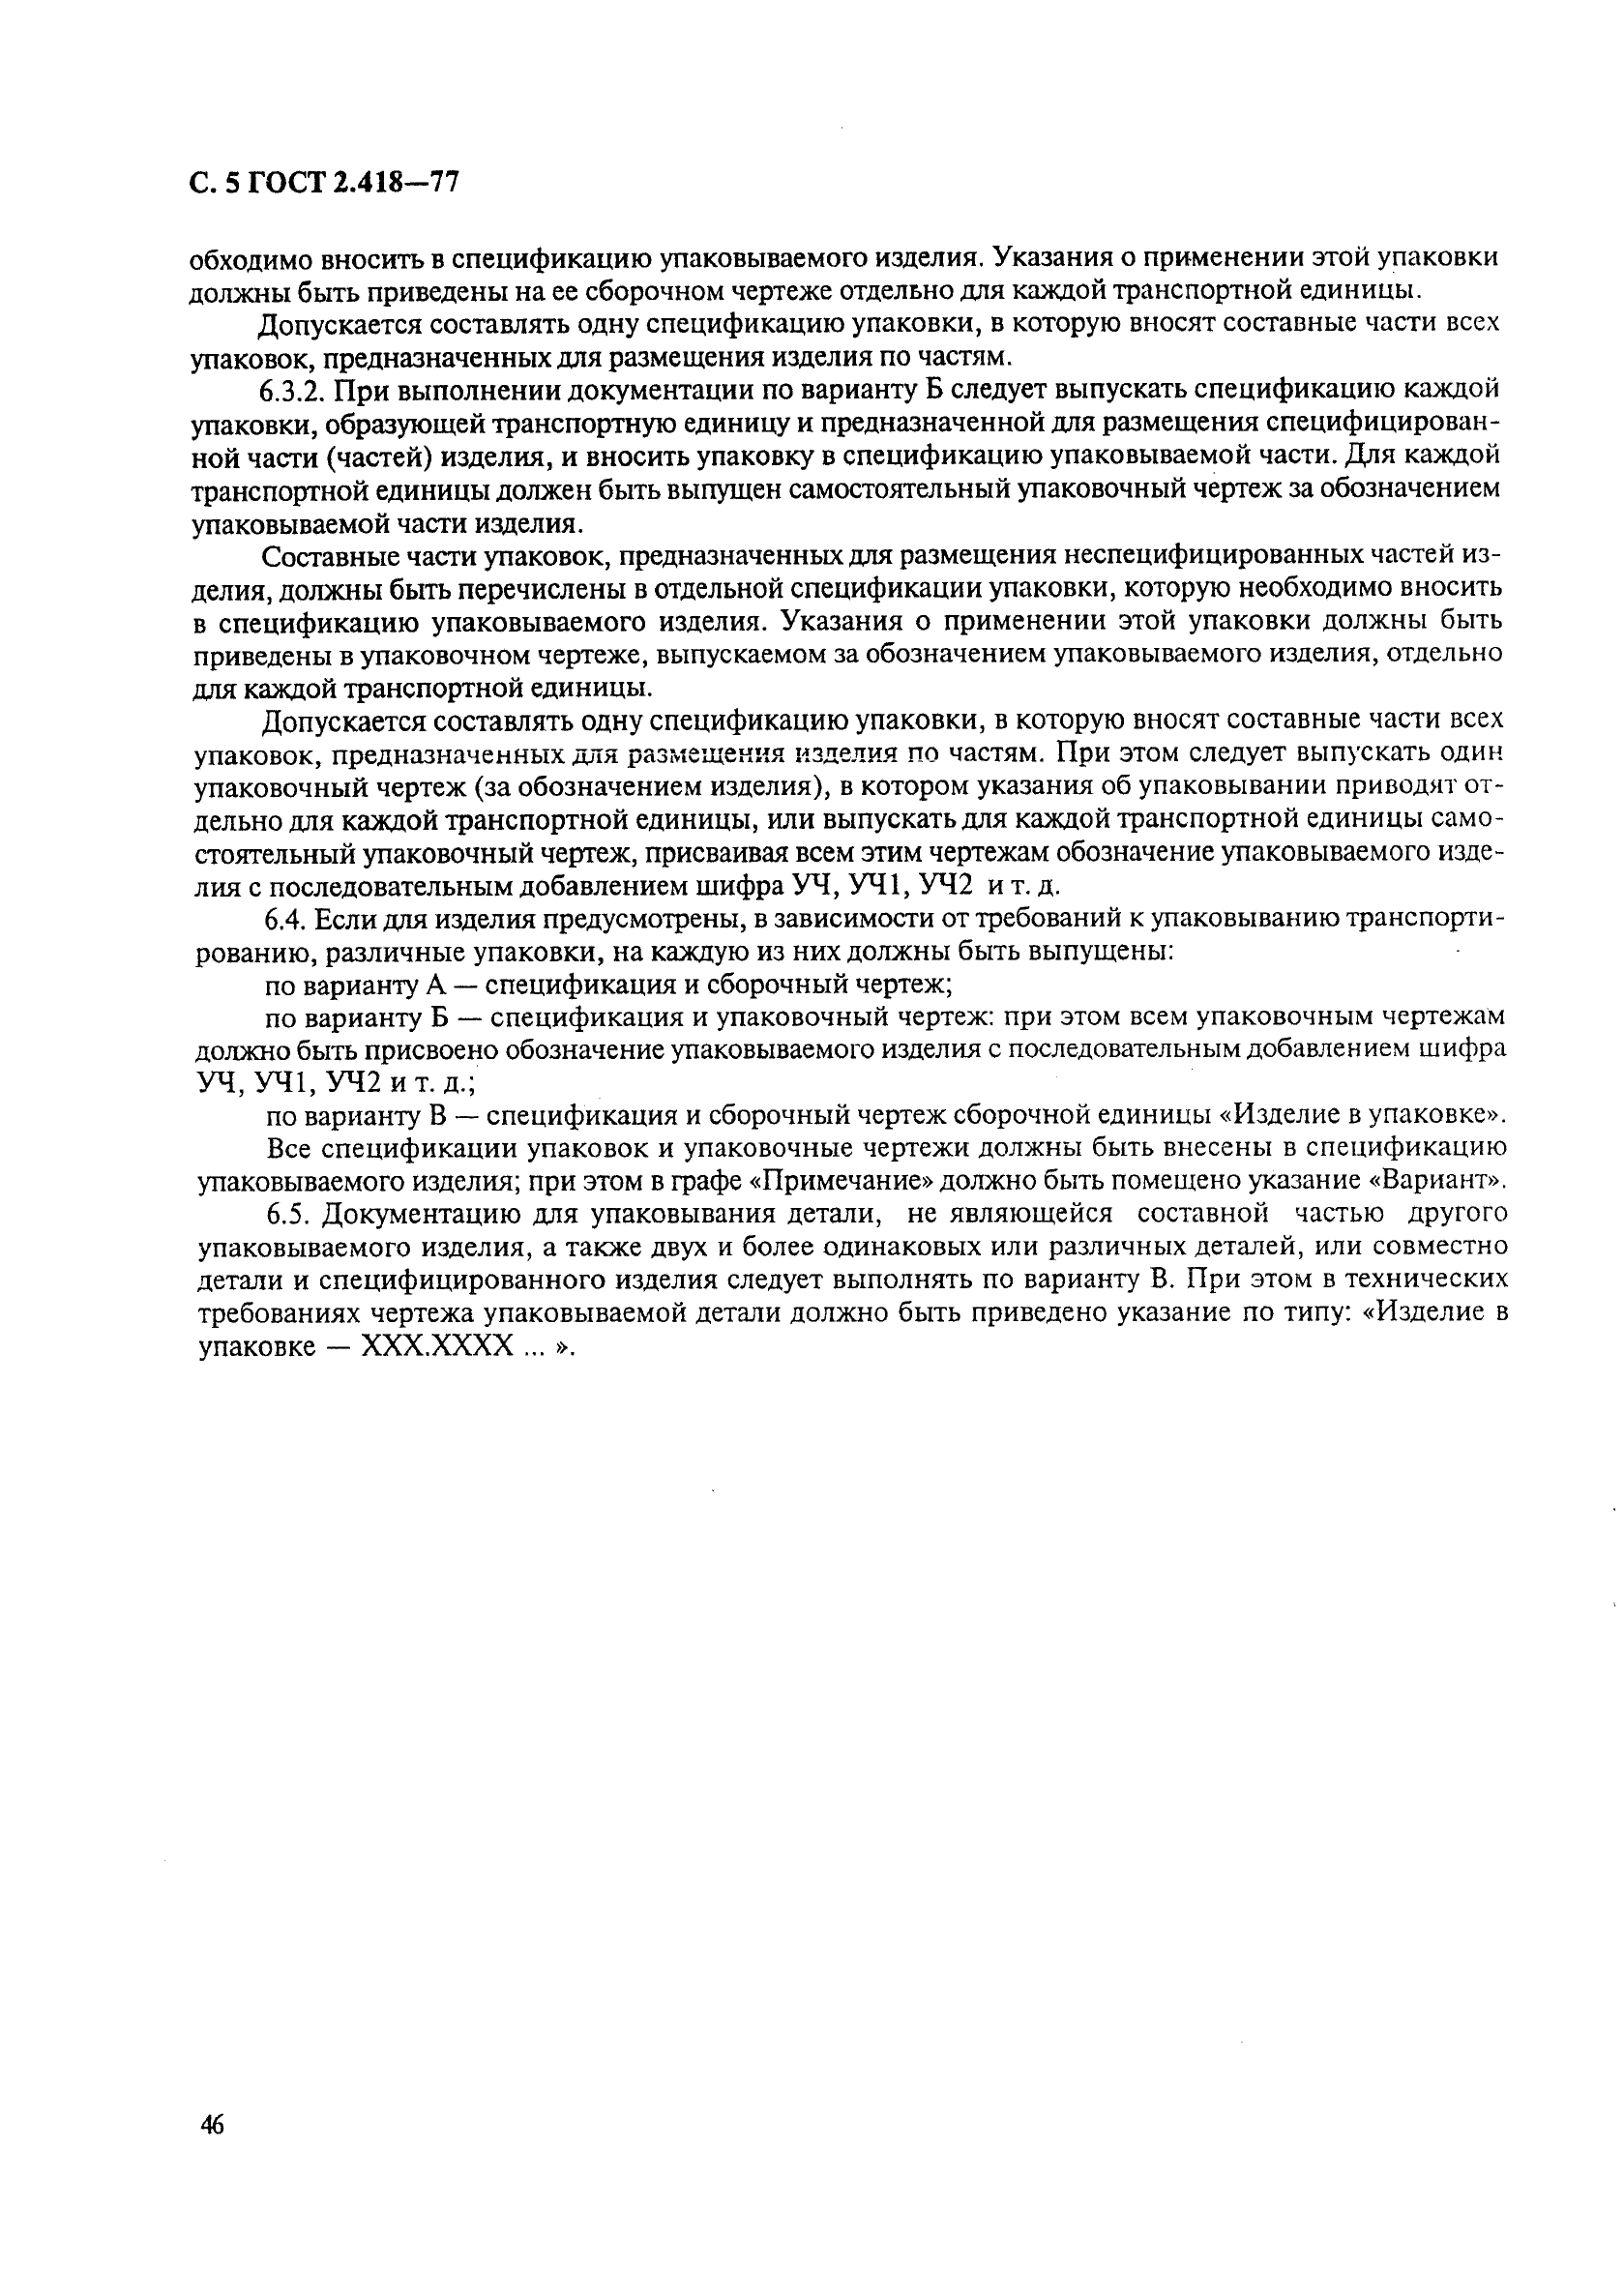 ГОСТ 2.418-77 Единая система конструкторской документации. Правила выполнения конструкторской документации упаковки (фото 5 из 5)